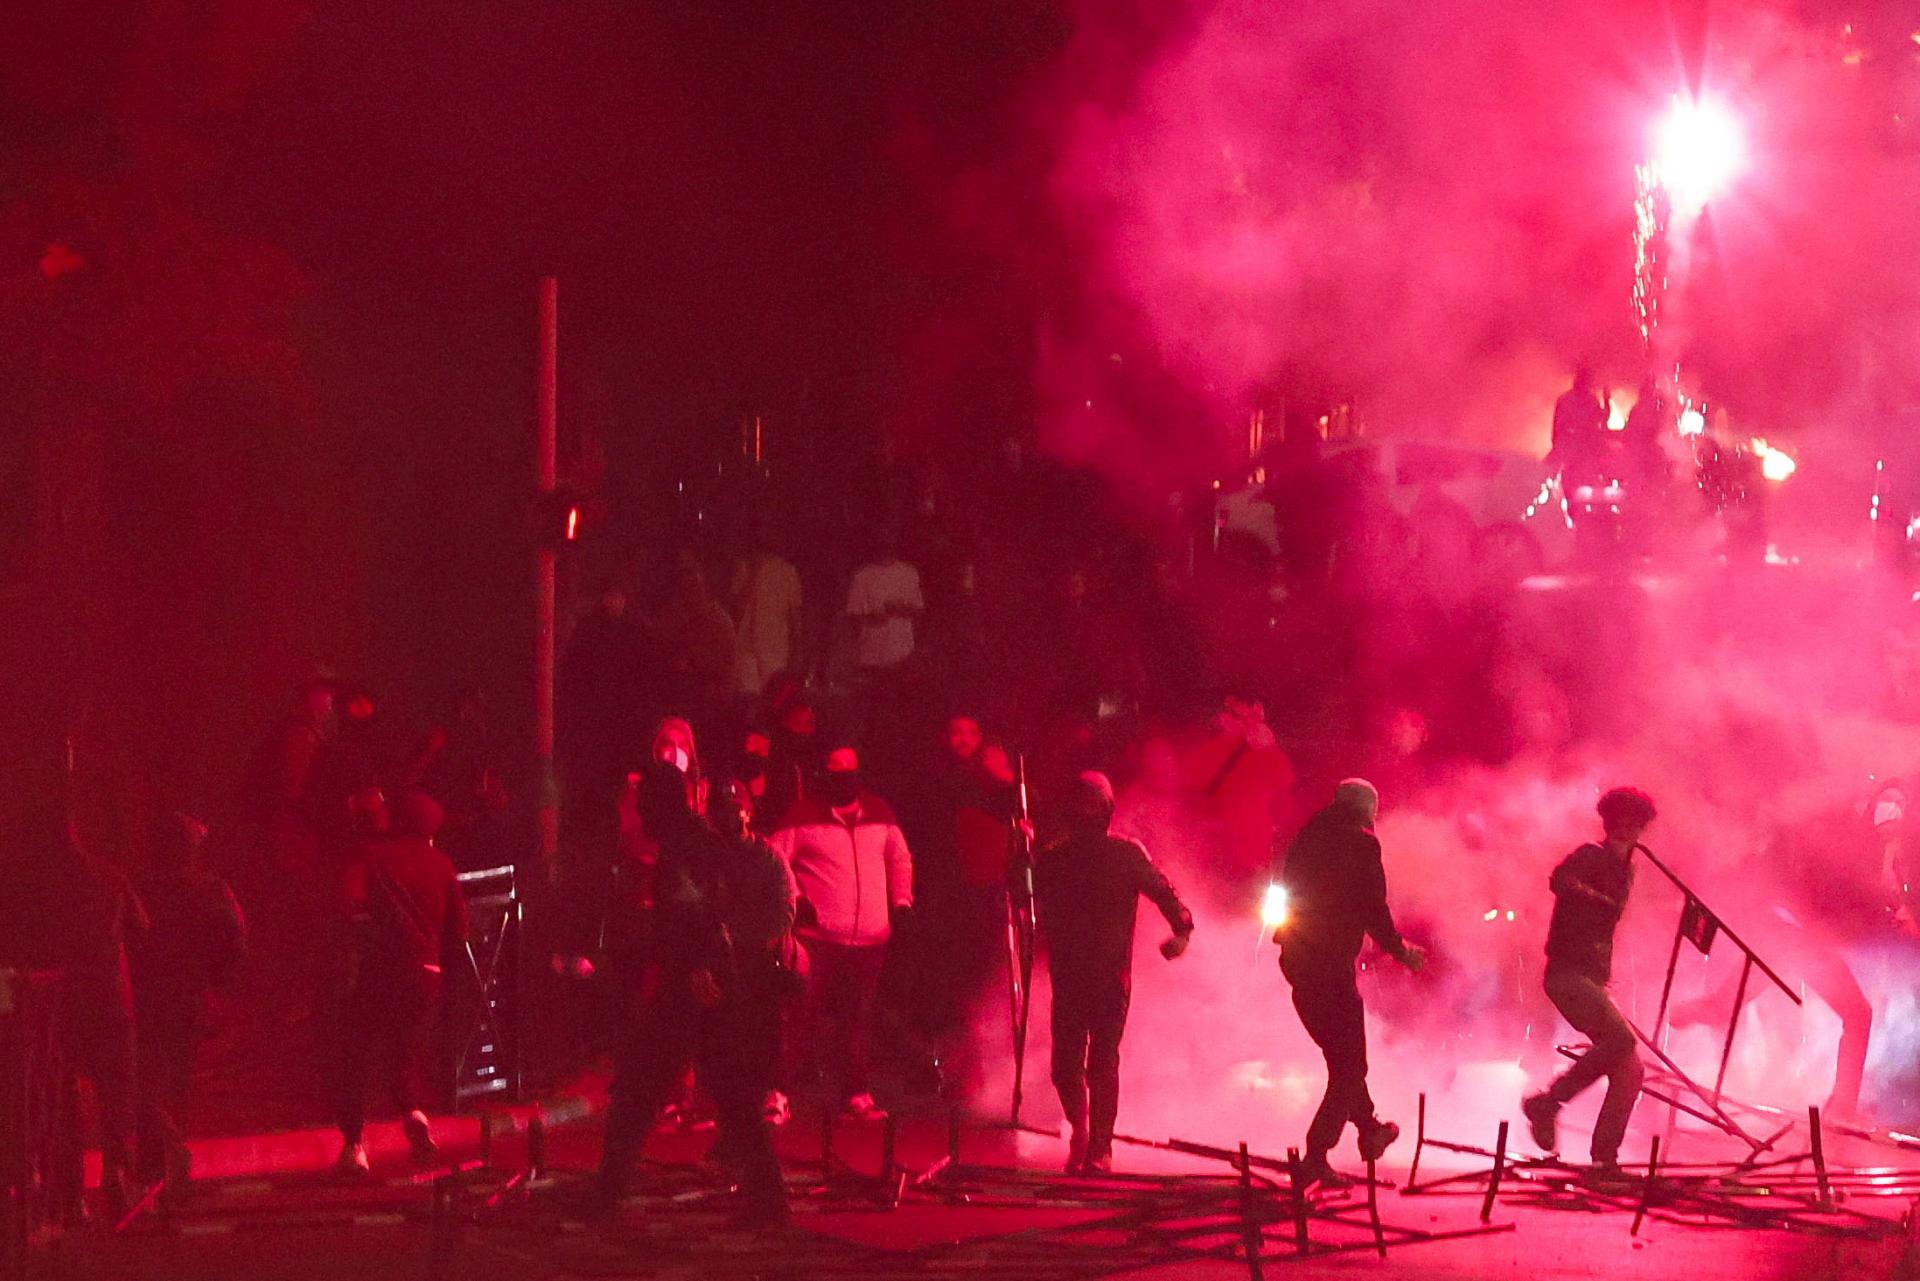 Požiare, výtržnosti a strety s políciou. Francúzsko sa potýka s ďalšou nepokojnou nocou po úmrtí tínedžera